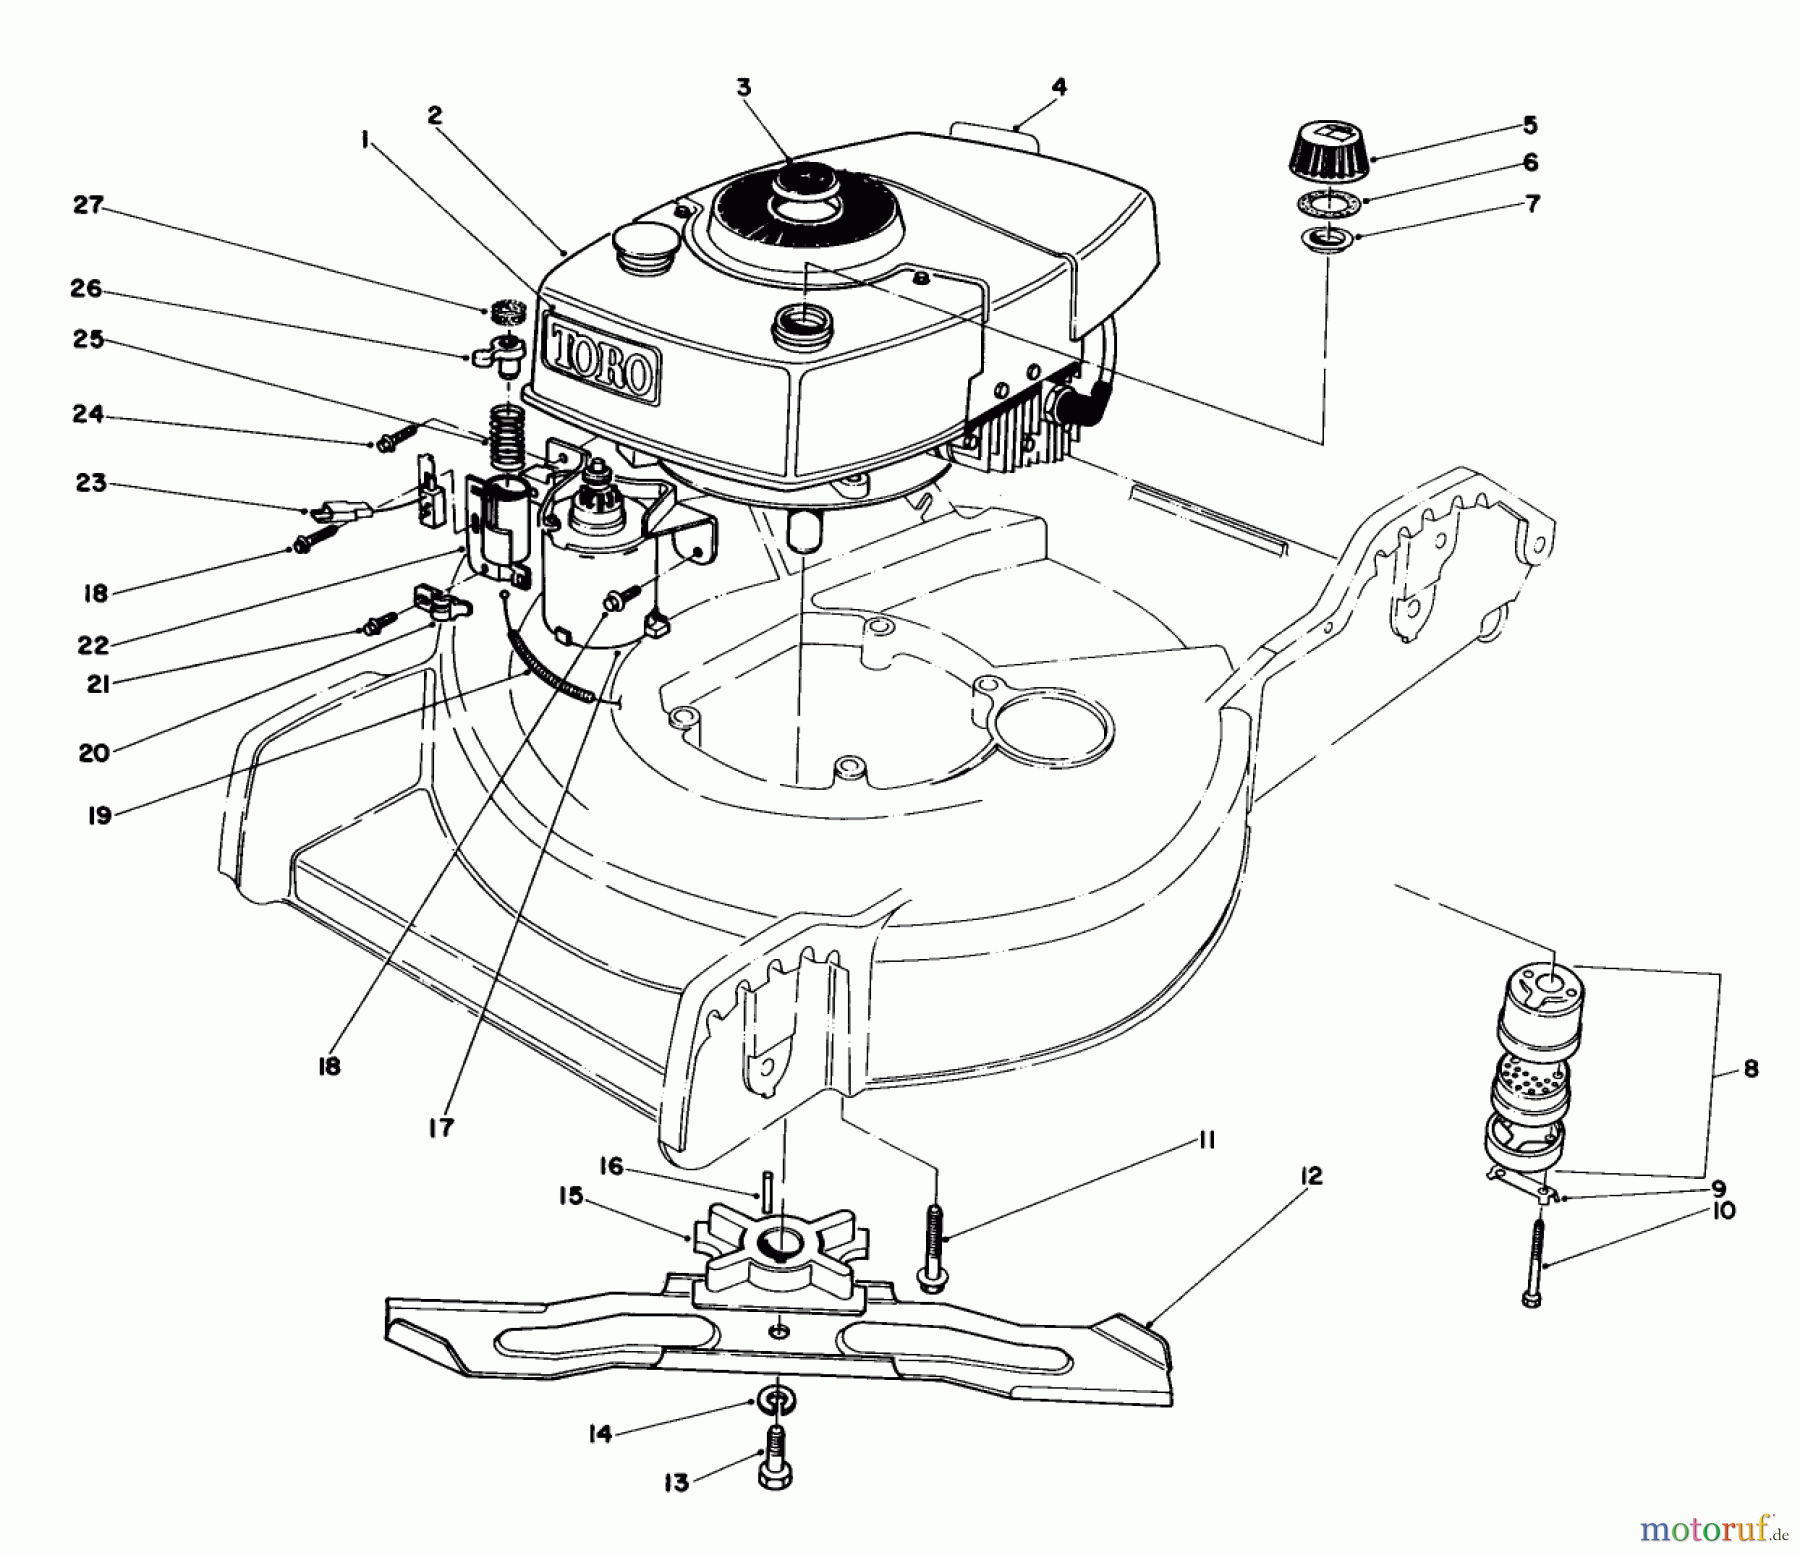  Toro Neu Mowers, Walk-Behind Seite 1 20574 - Toro Lawnmower, 1983 (3000001-3999999) ENGINE ASSEMBLY